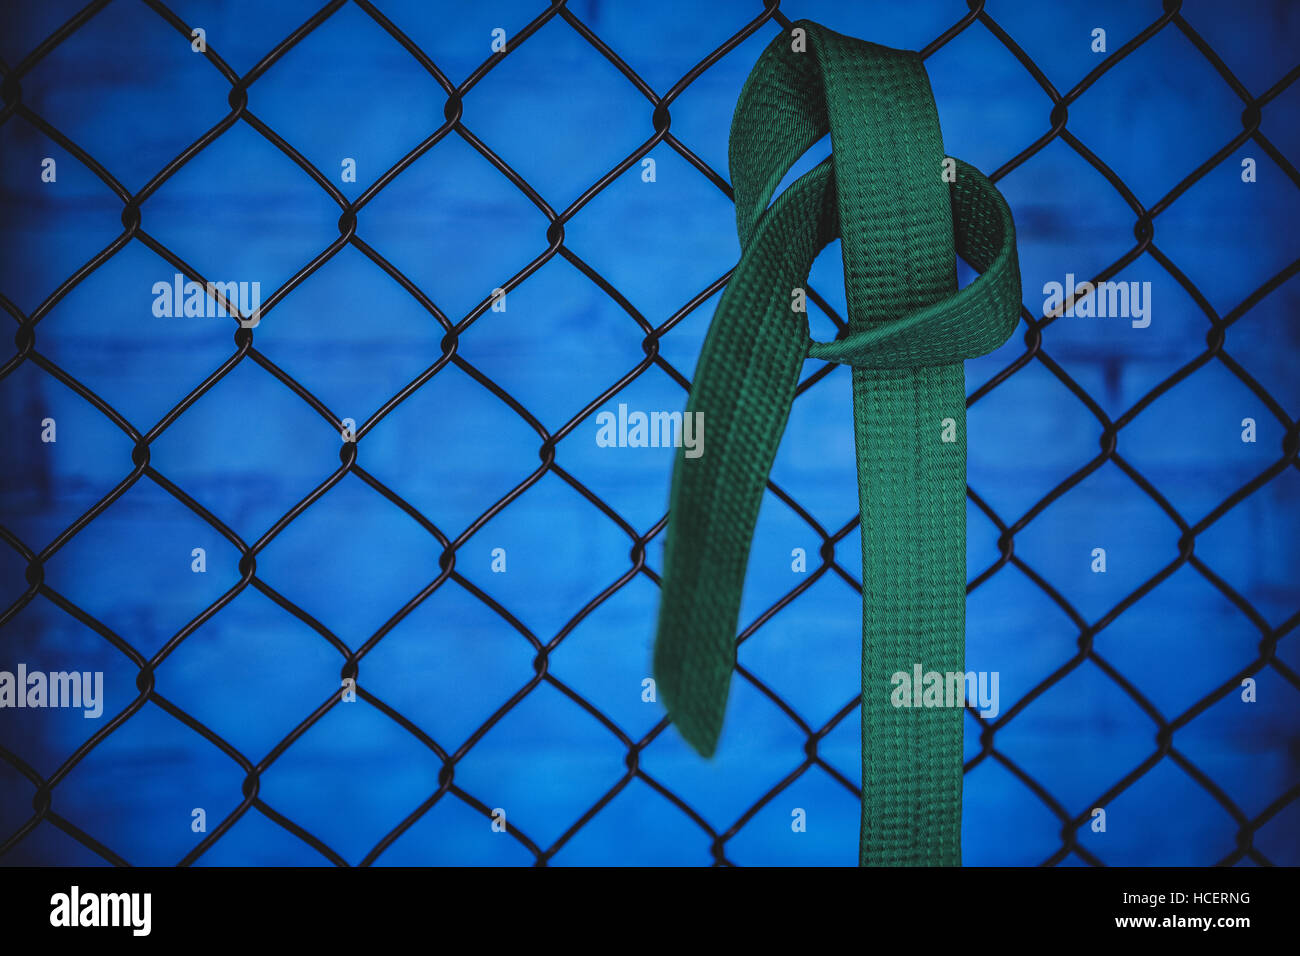 Cinturón verde de karate colgando sobre la valla de malla de alambre Foto de stock